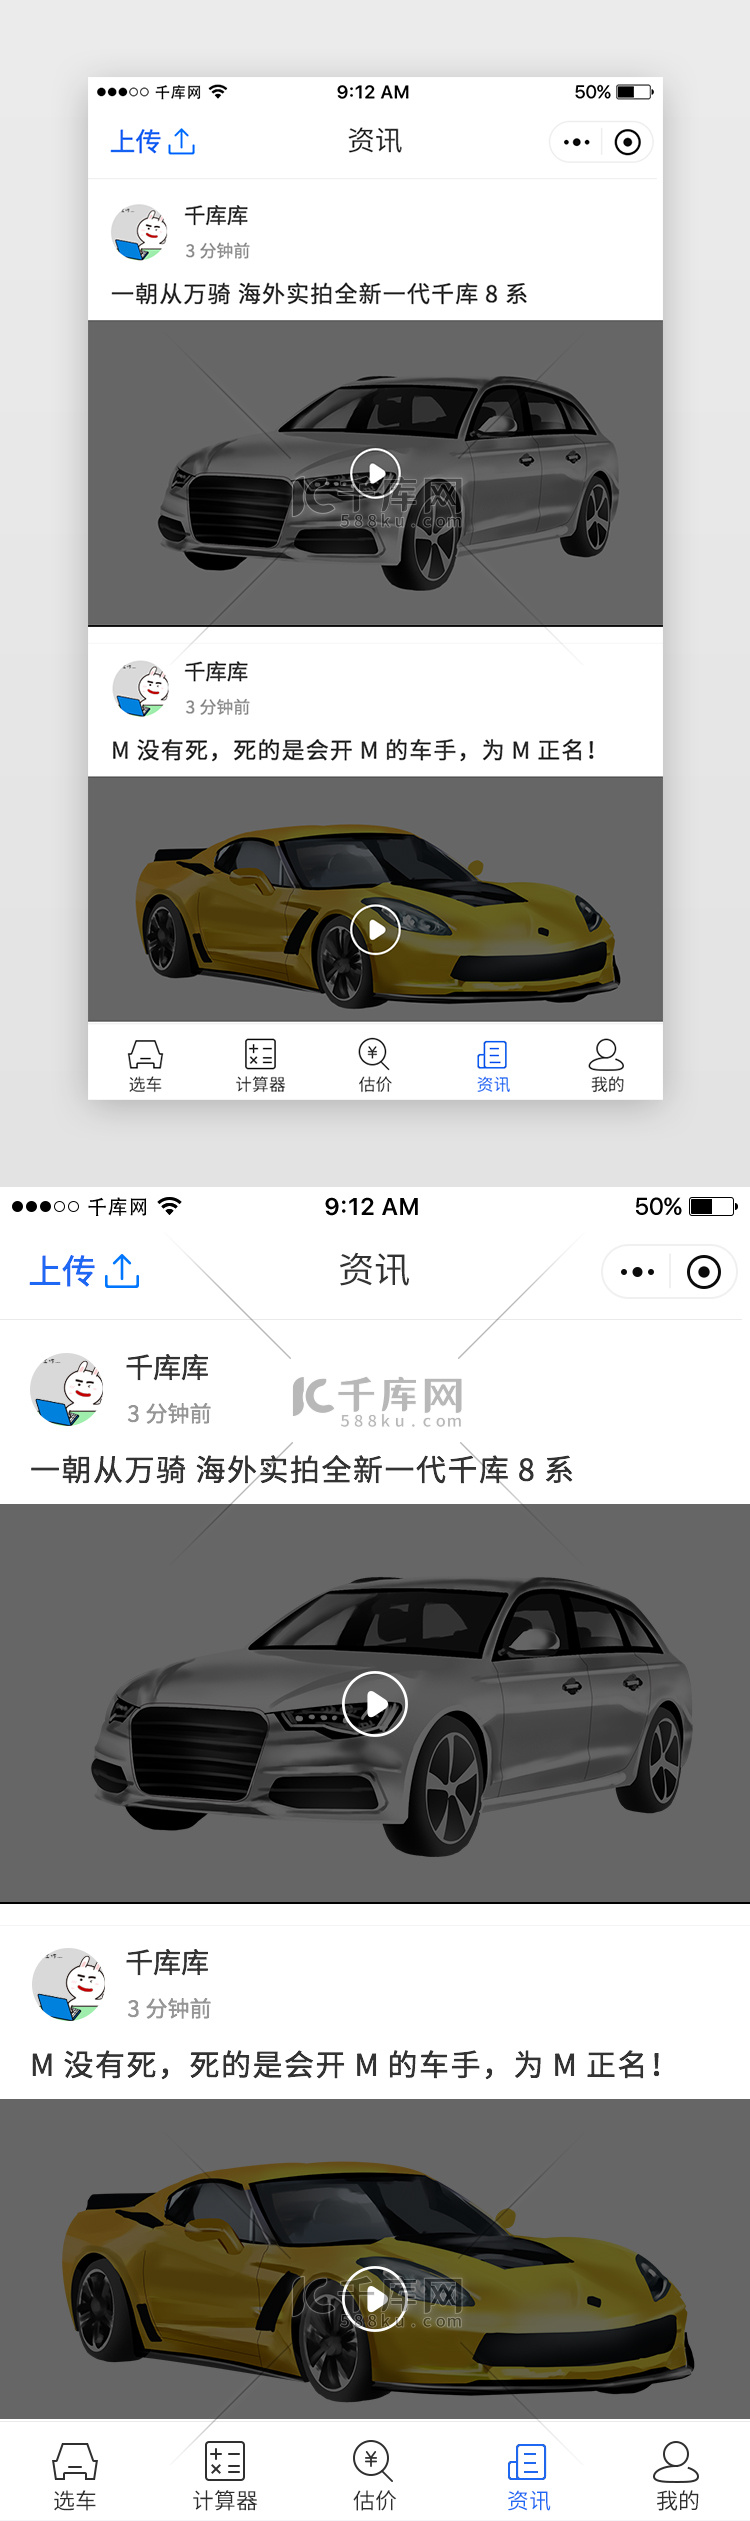 蓝色汽车购买资讯App资讯页